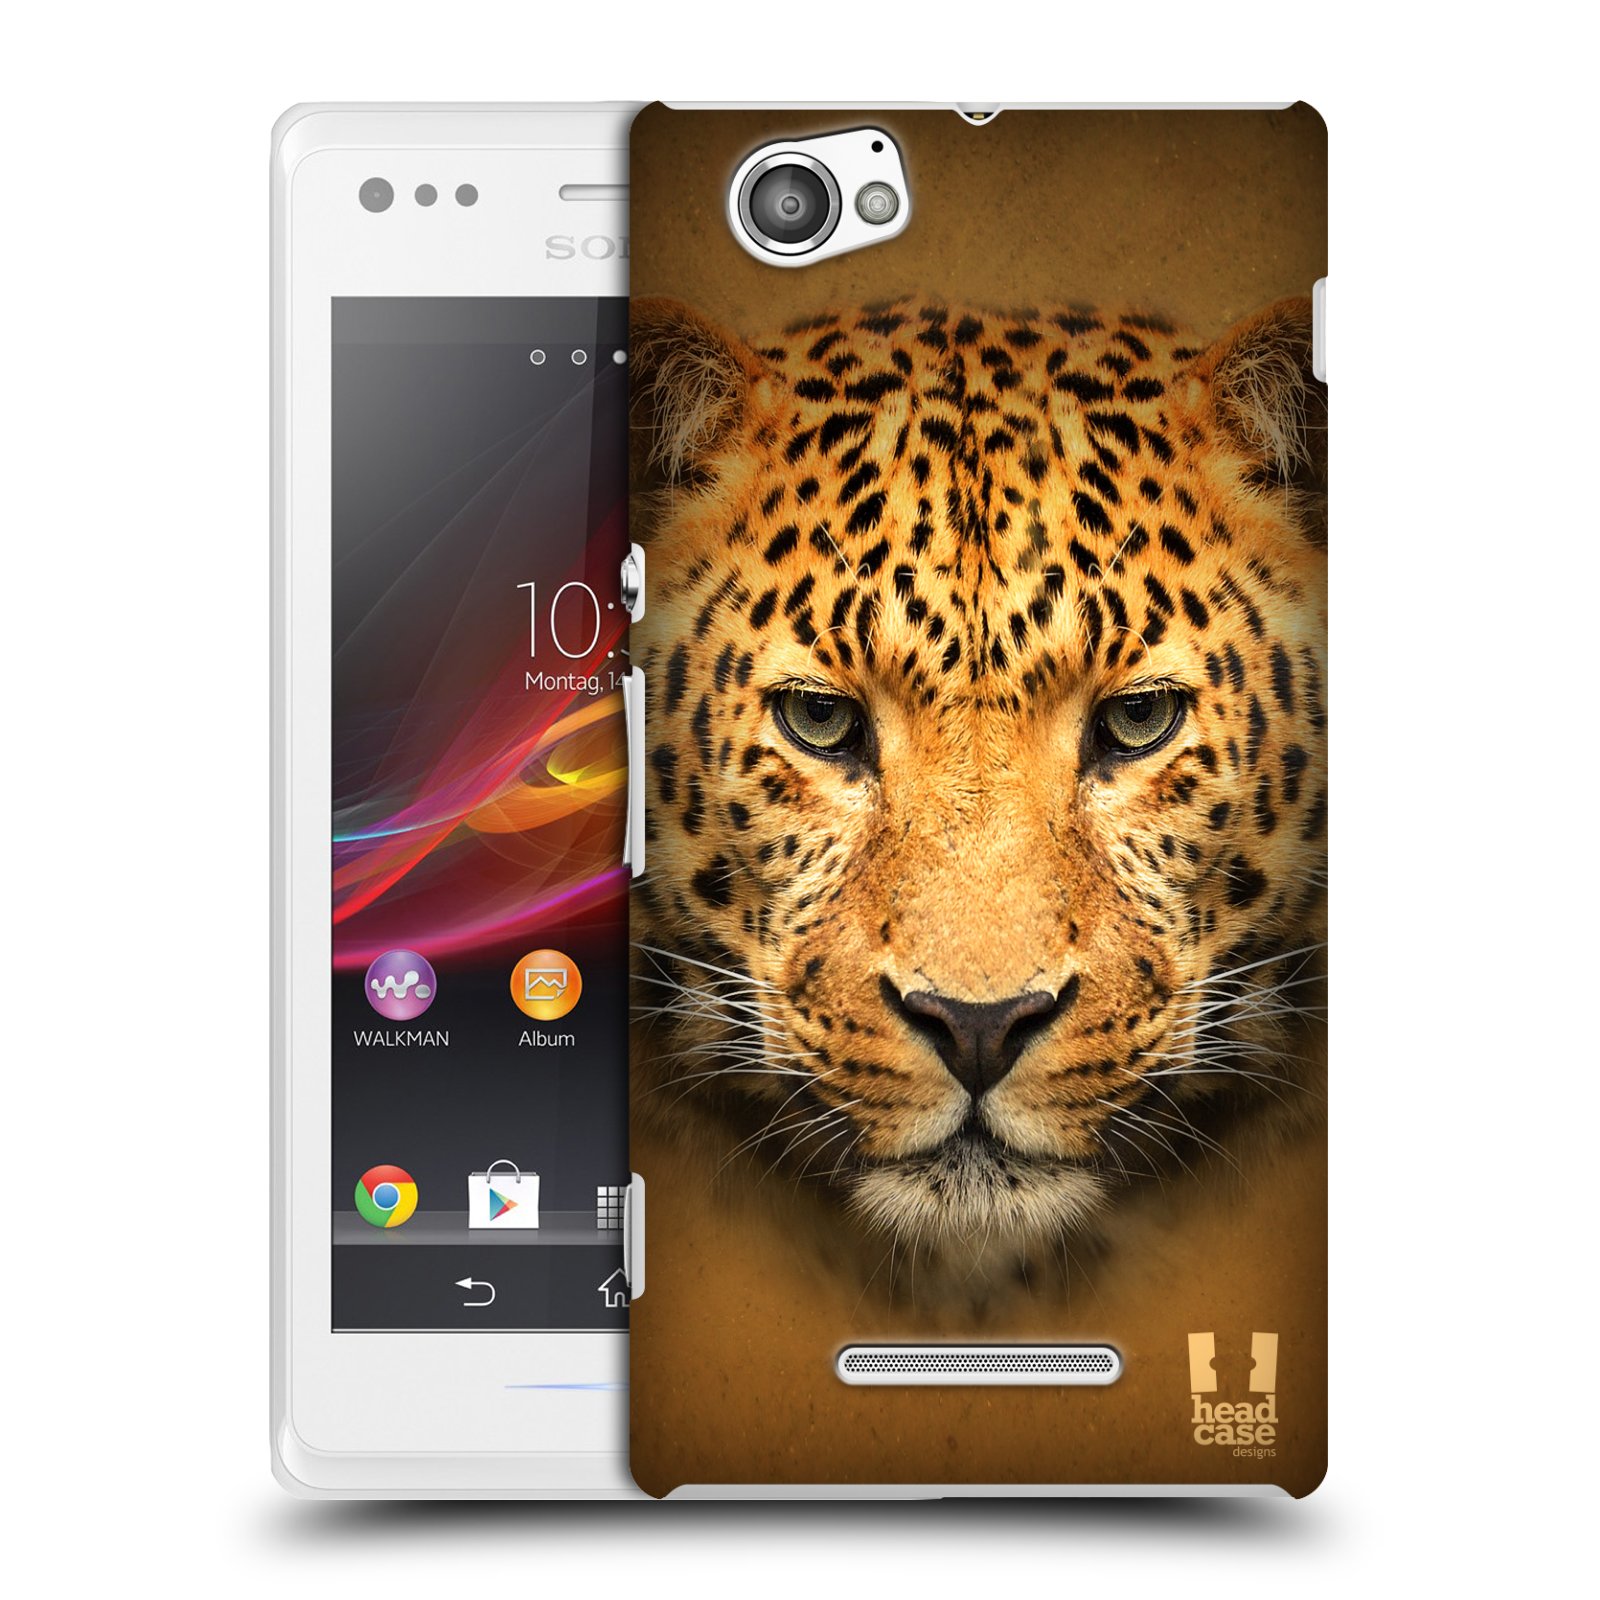 HEAD CASE plastový obal na mobil Sony Xperia M vzor Zvířecí tváře 2 leopard